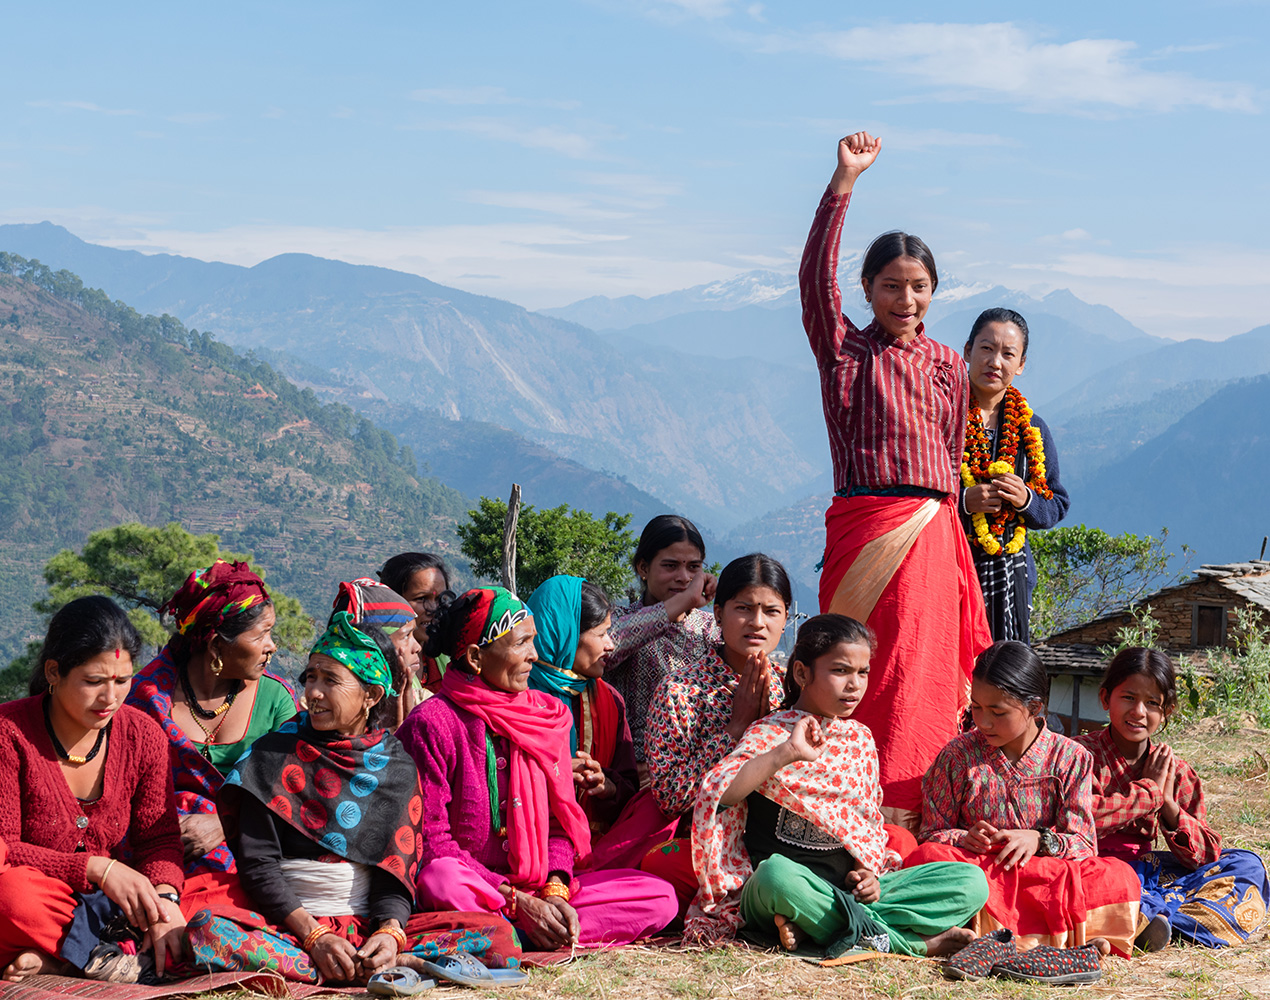 ryhmä nepalilaisia nuoria istuu maassa, kaksi heistä seisoo ja toisella seisovista nuorista on toinen käsi nostettu pystyyn, taustalla näkyy korkeita vuoria